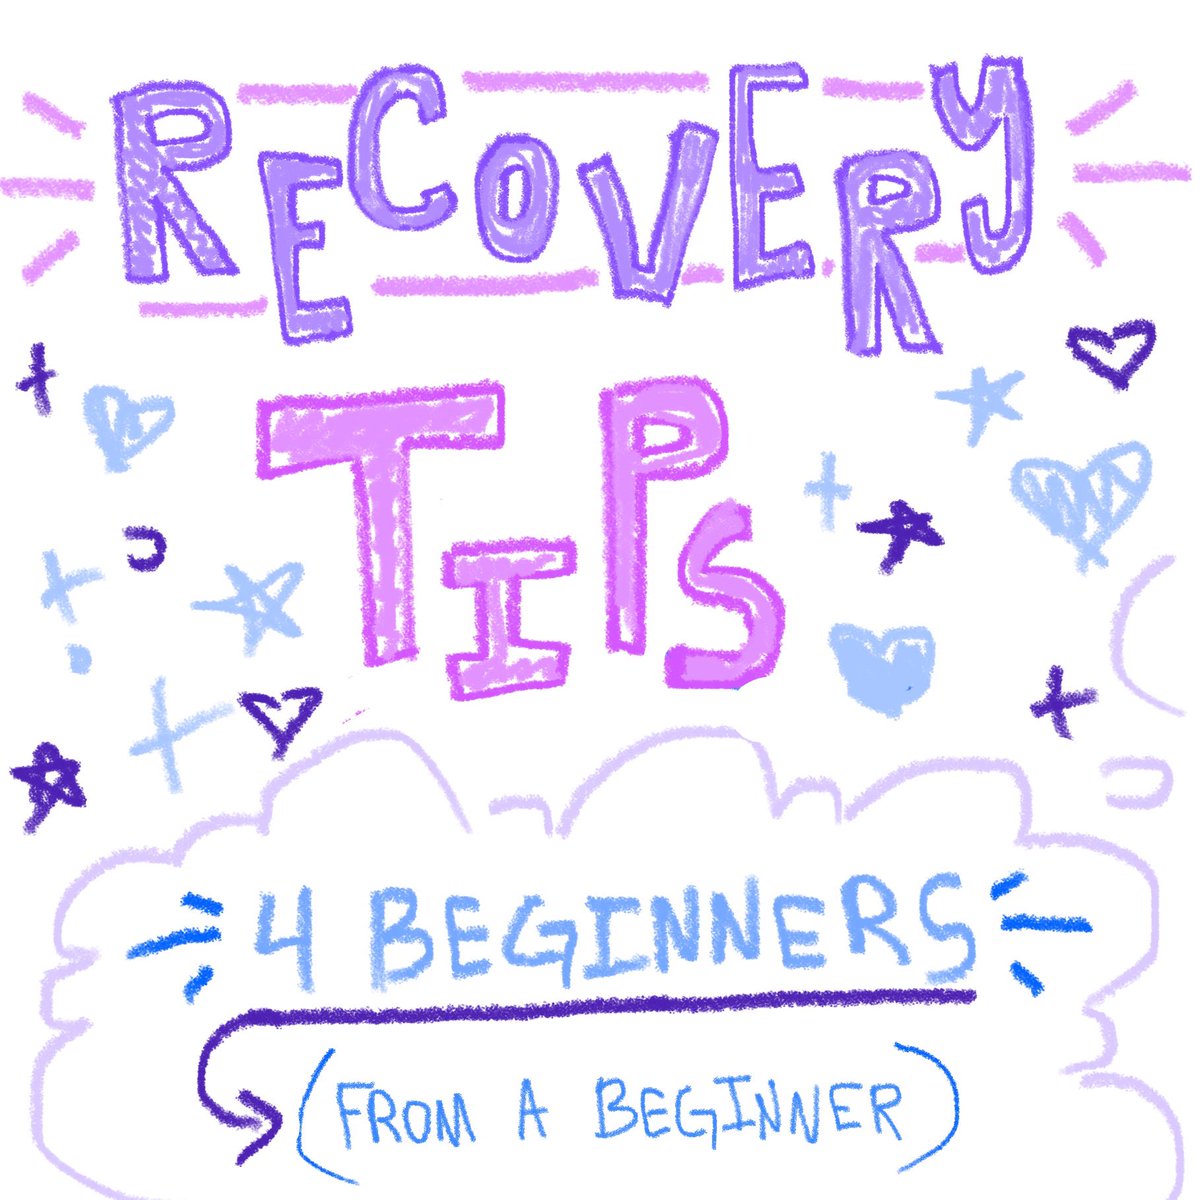 ╱|、
(˚ˎ 。7  
 |、˜〵          
じしˍ,)ノ - RECOVERY TIPS !!

✩ 4 beginners from a beginner ✩